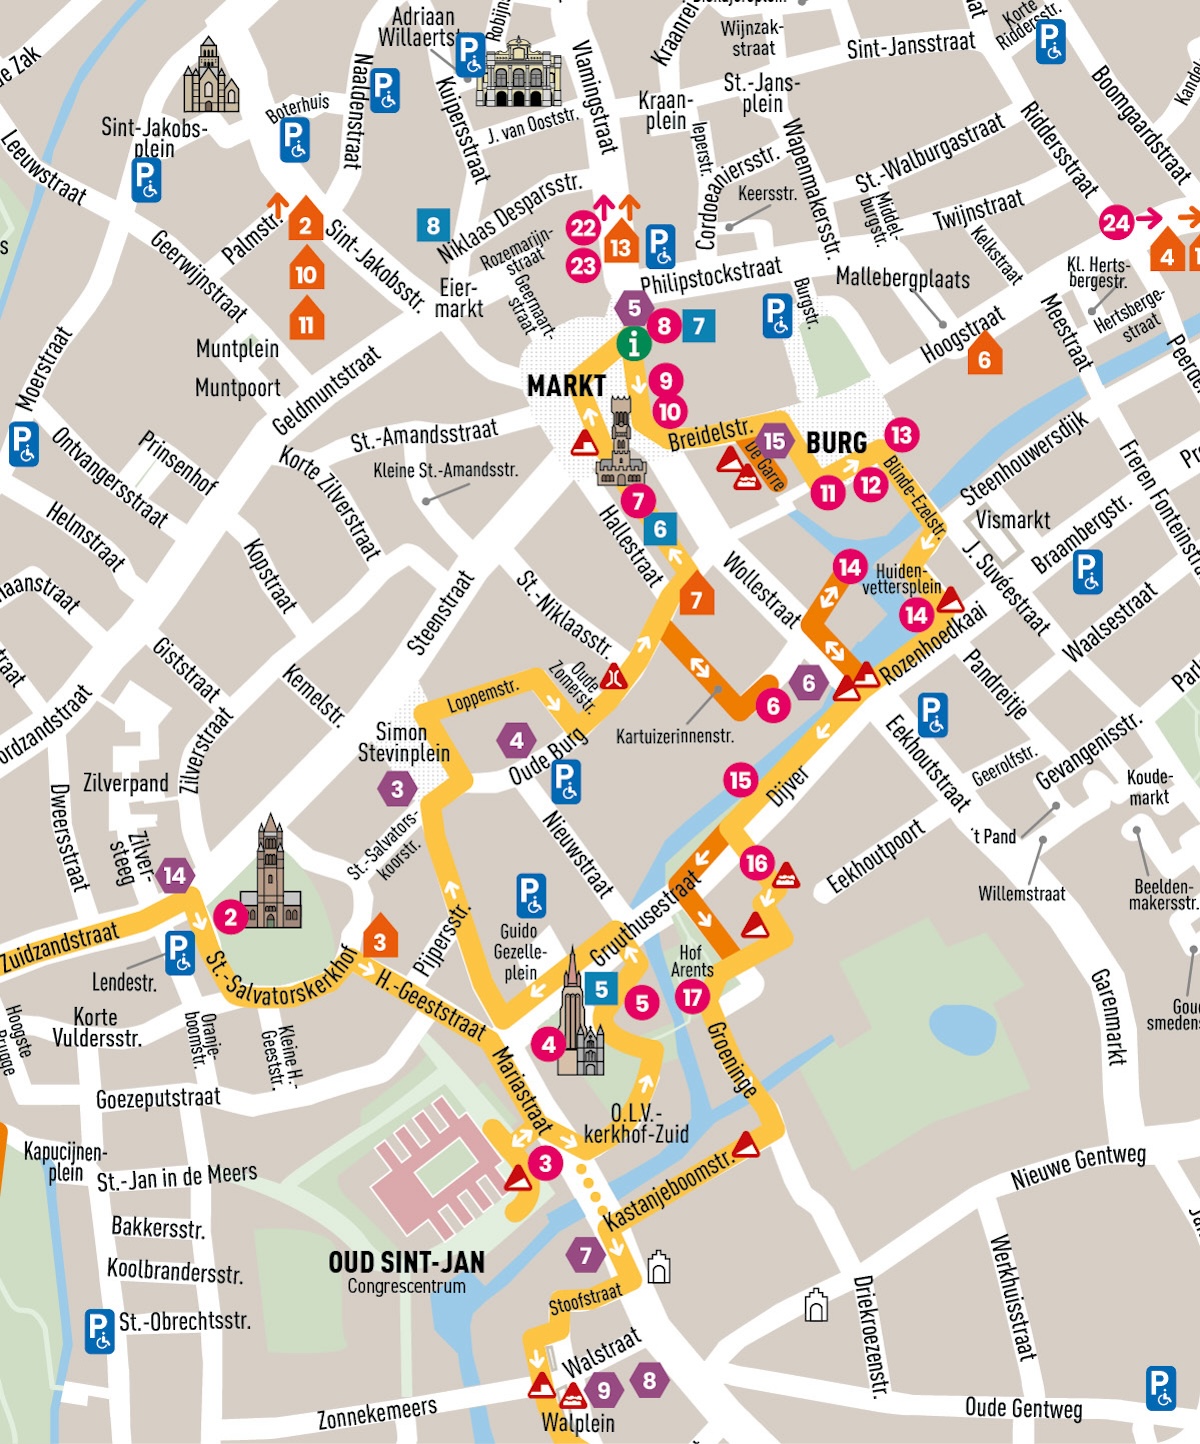 Carte détaillée 2 avec partie du parcours. La carte est délimitée : Royal Municipal Theatre au nord, Groenerei à l'est, Walplein au sud, Zuidzandstraat à l'ouest.